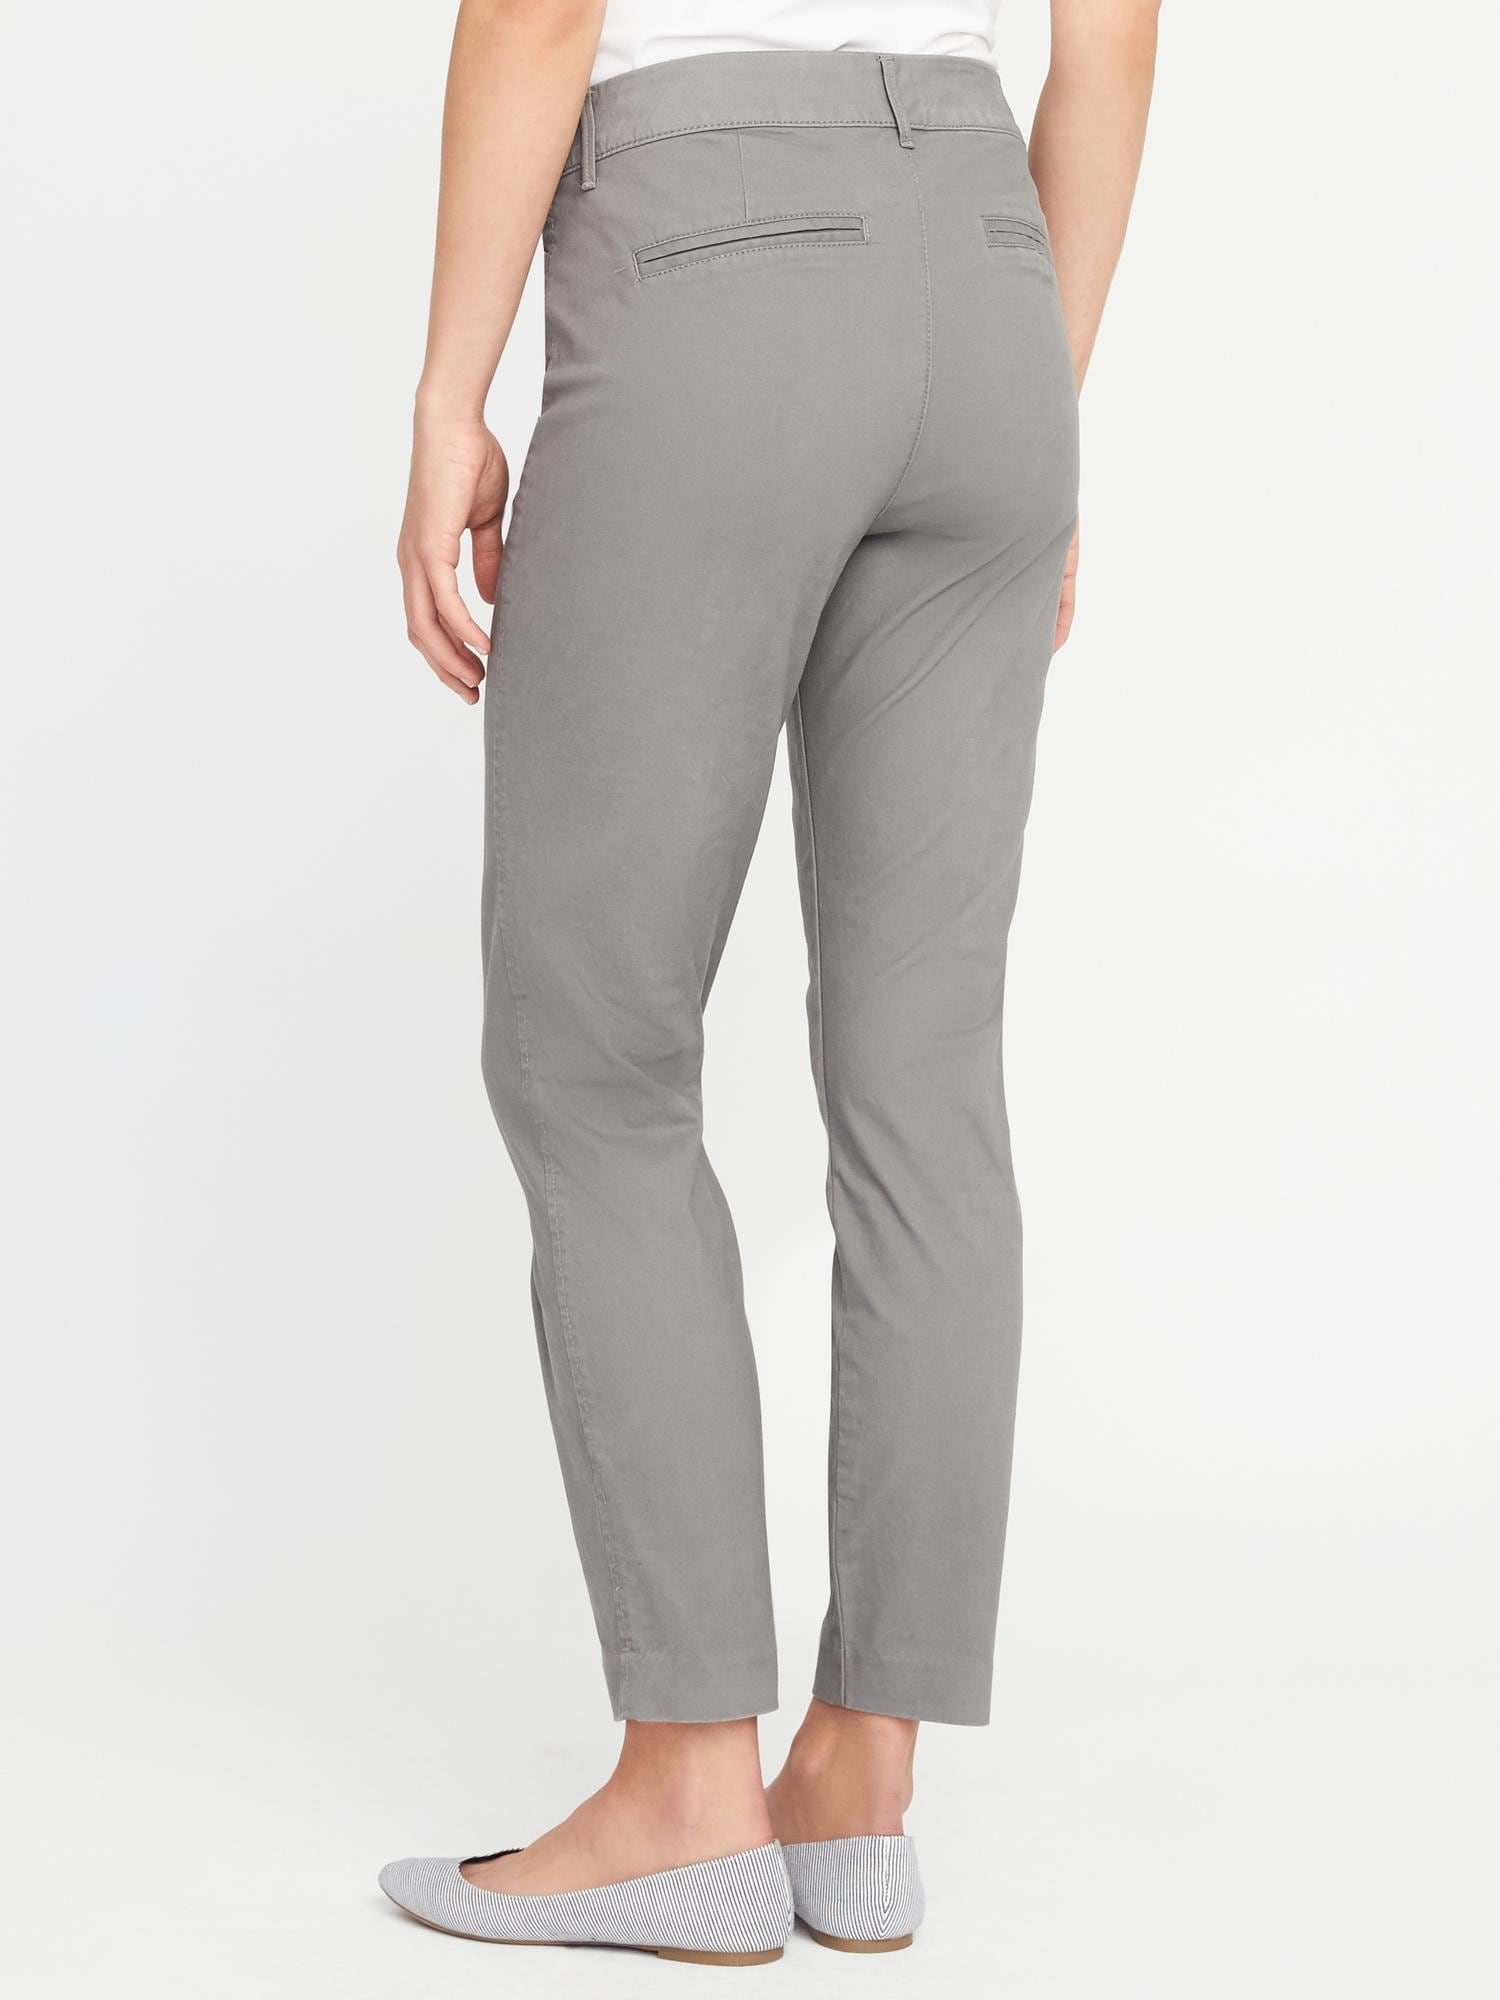 women's gray chino pants